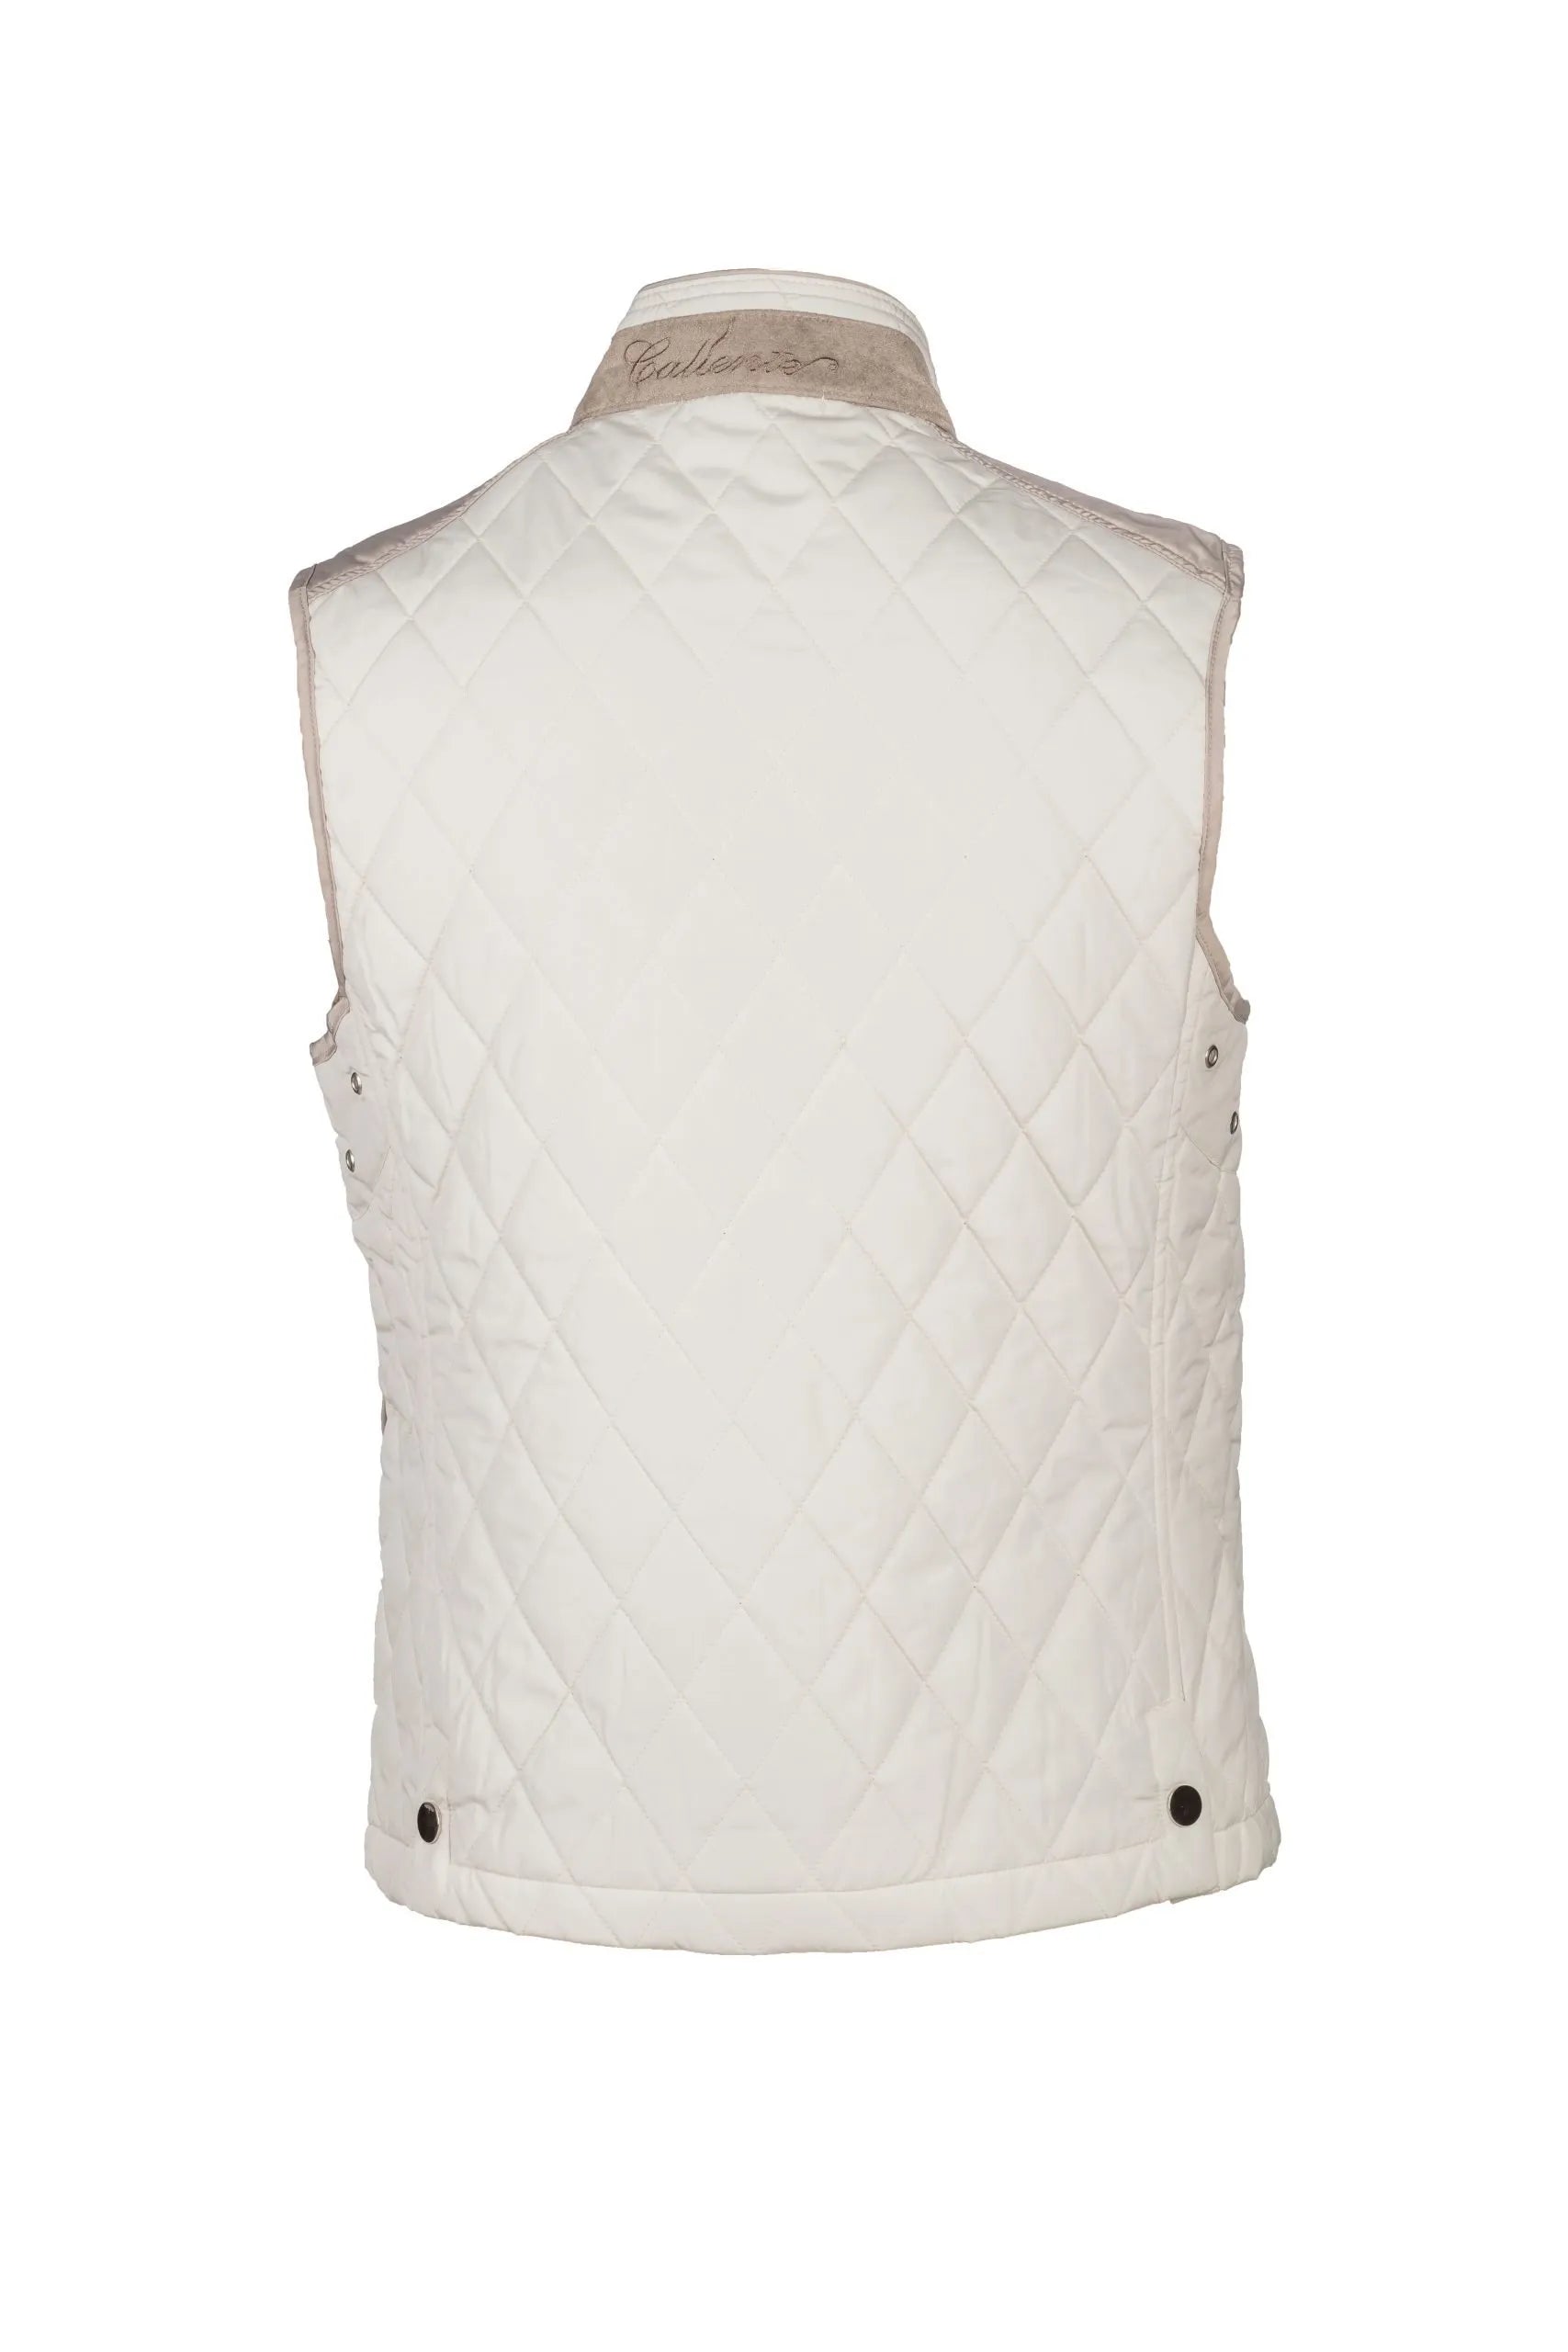 Caliente Vest Beige - Caliente Vest Collection 2